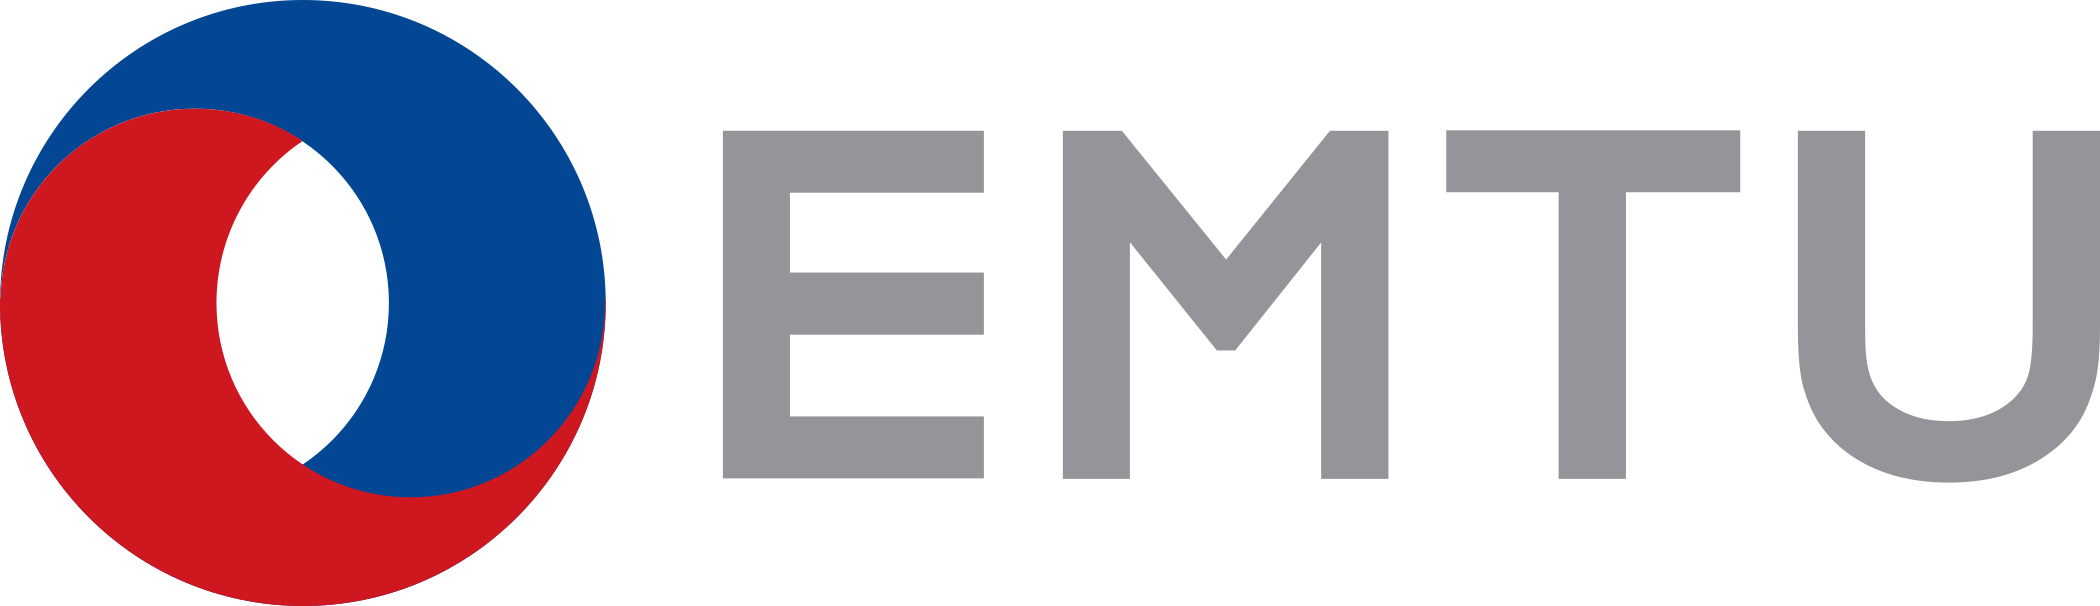 EMTU Logo.